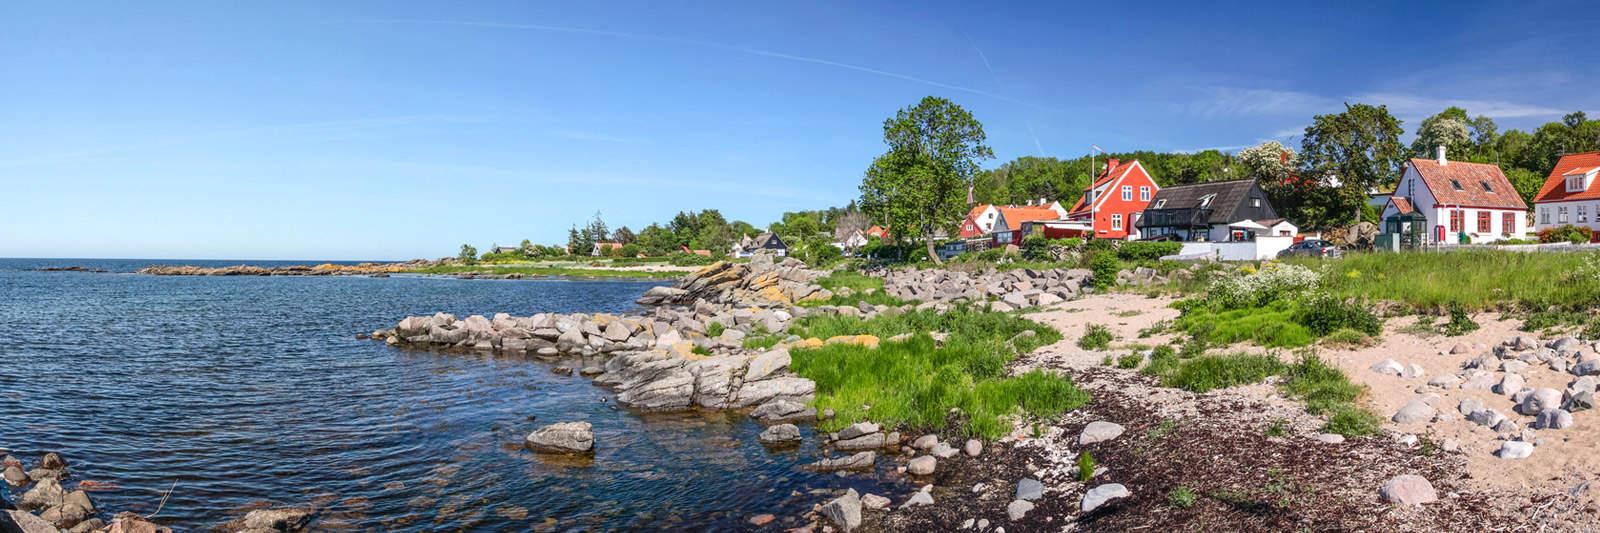 85 Ferienwohnungen und Ferienhäuser in Rønde - tourist-online.de